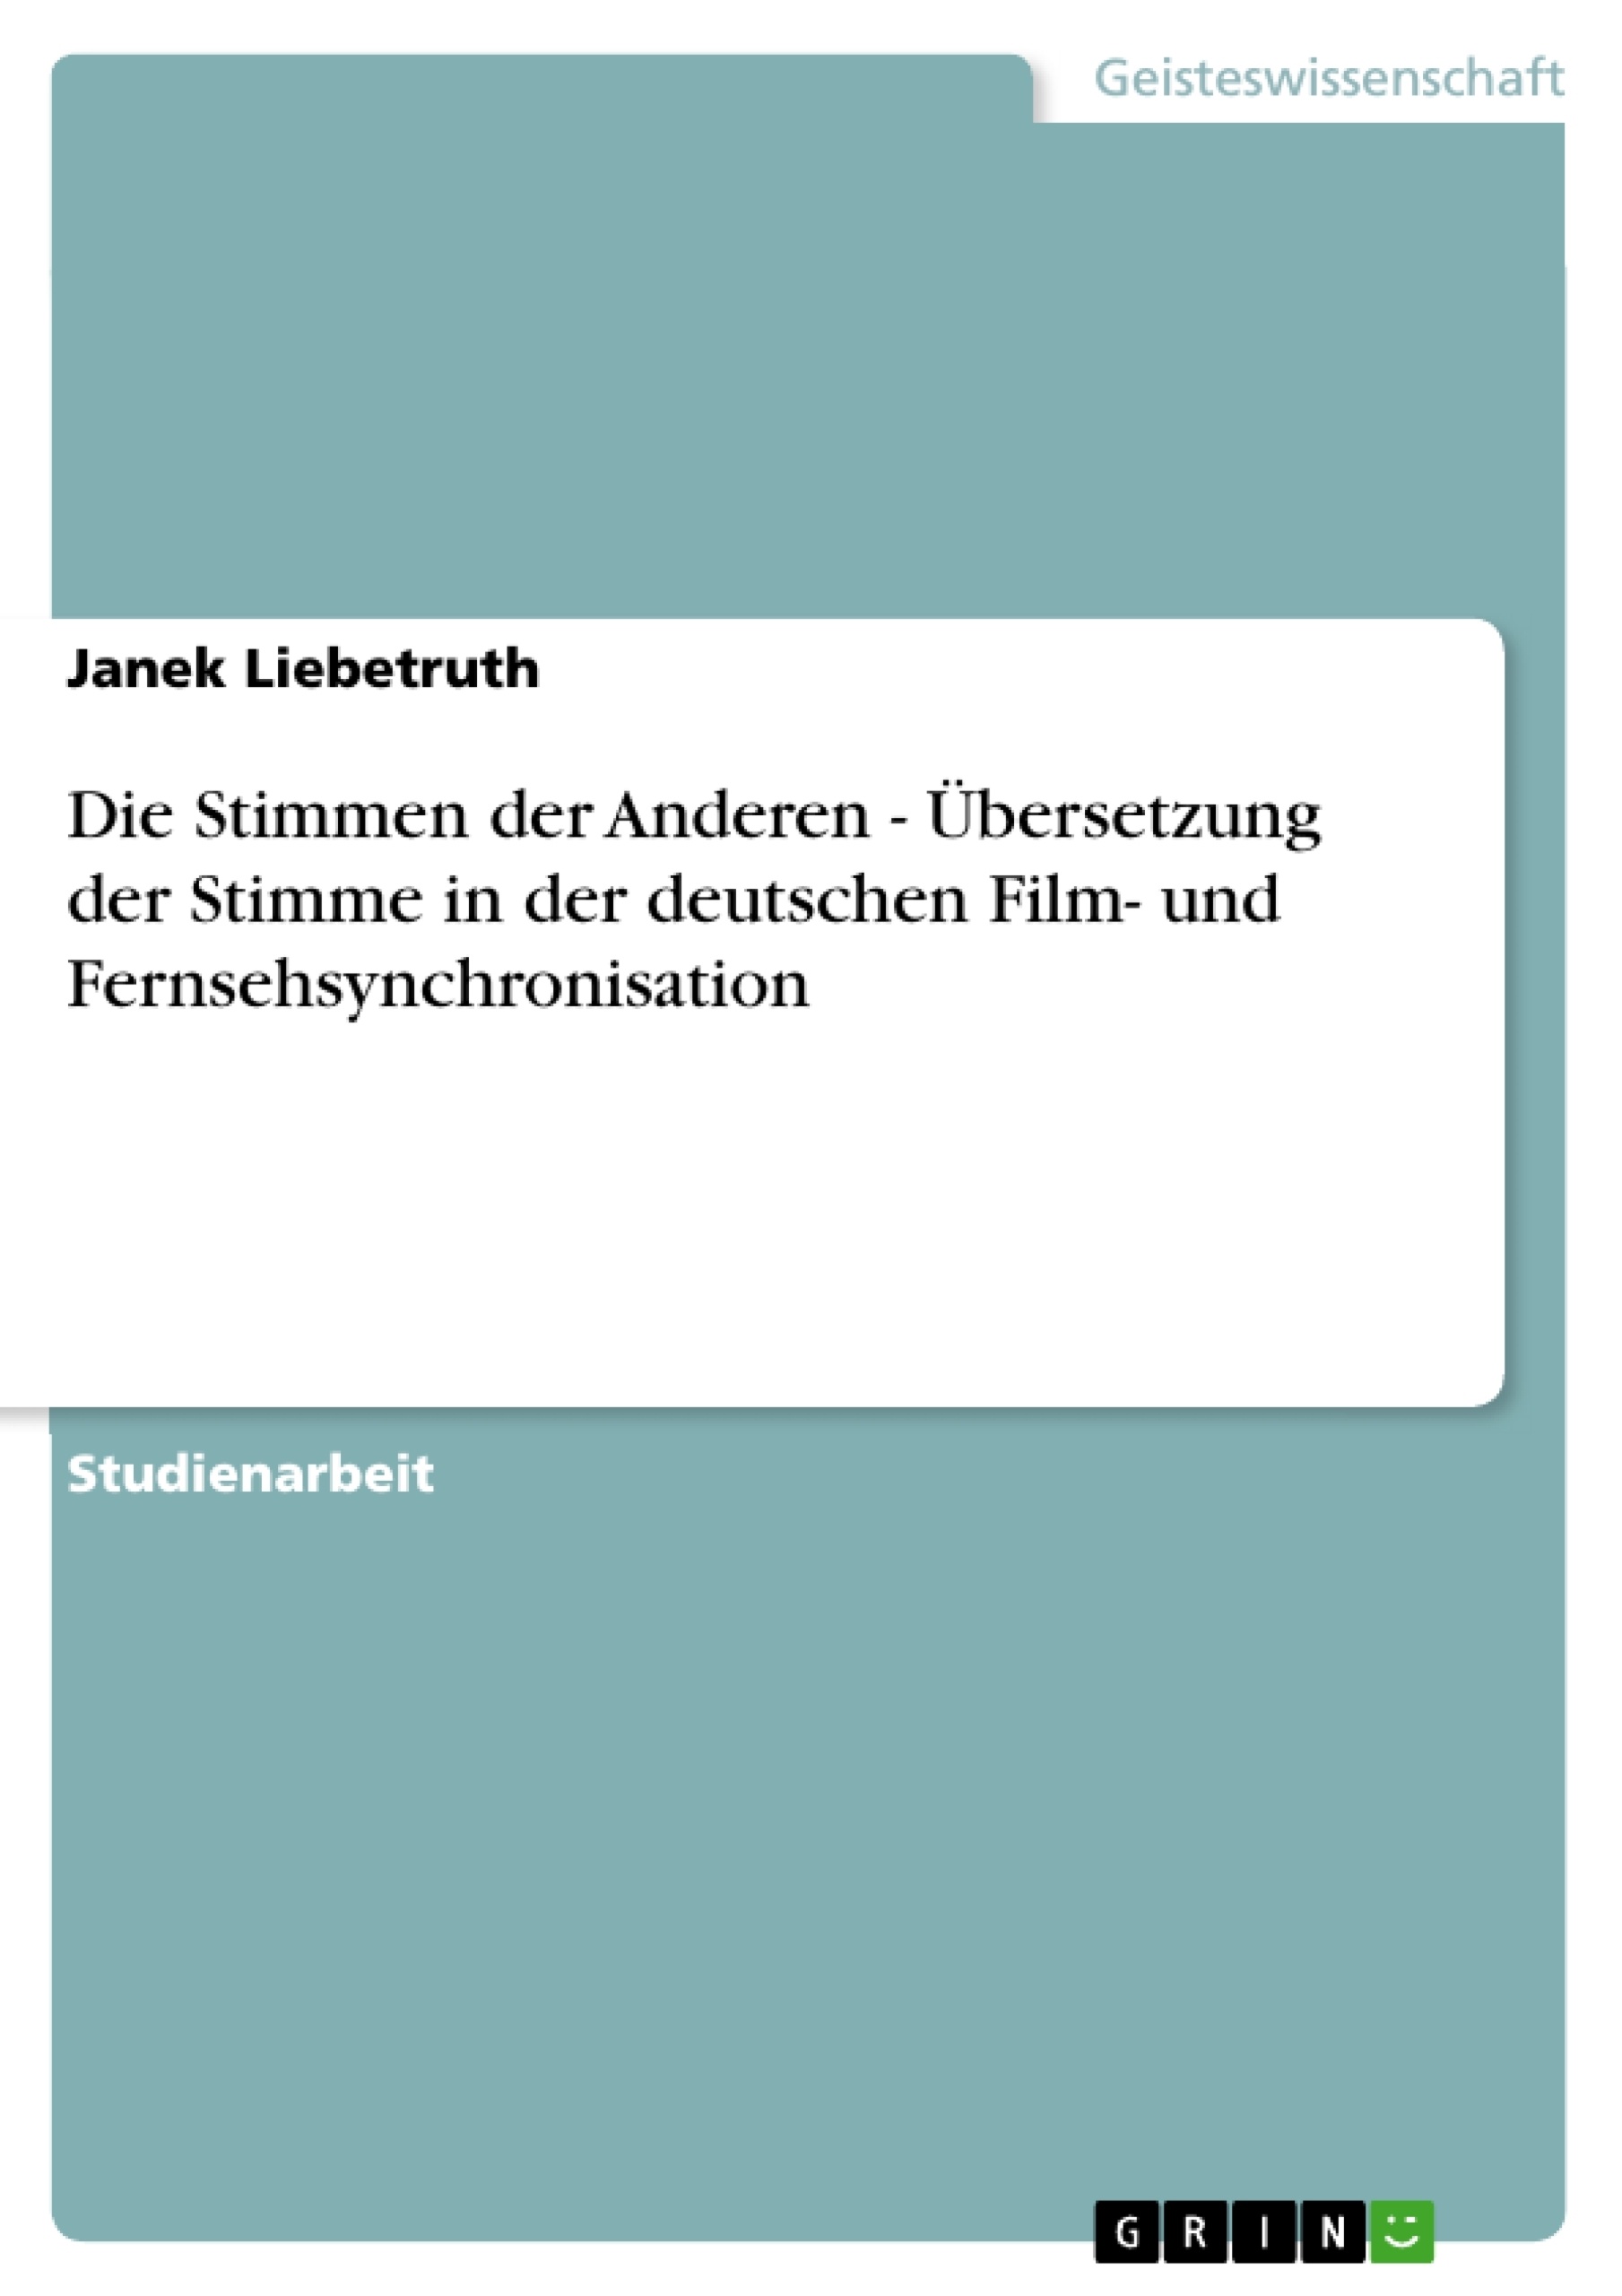 Título: Die Stimmen der Anderen - Übersetzung der Stimme in der deutschen Film- und Fernsehsynchronisation